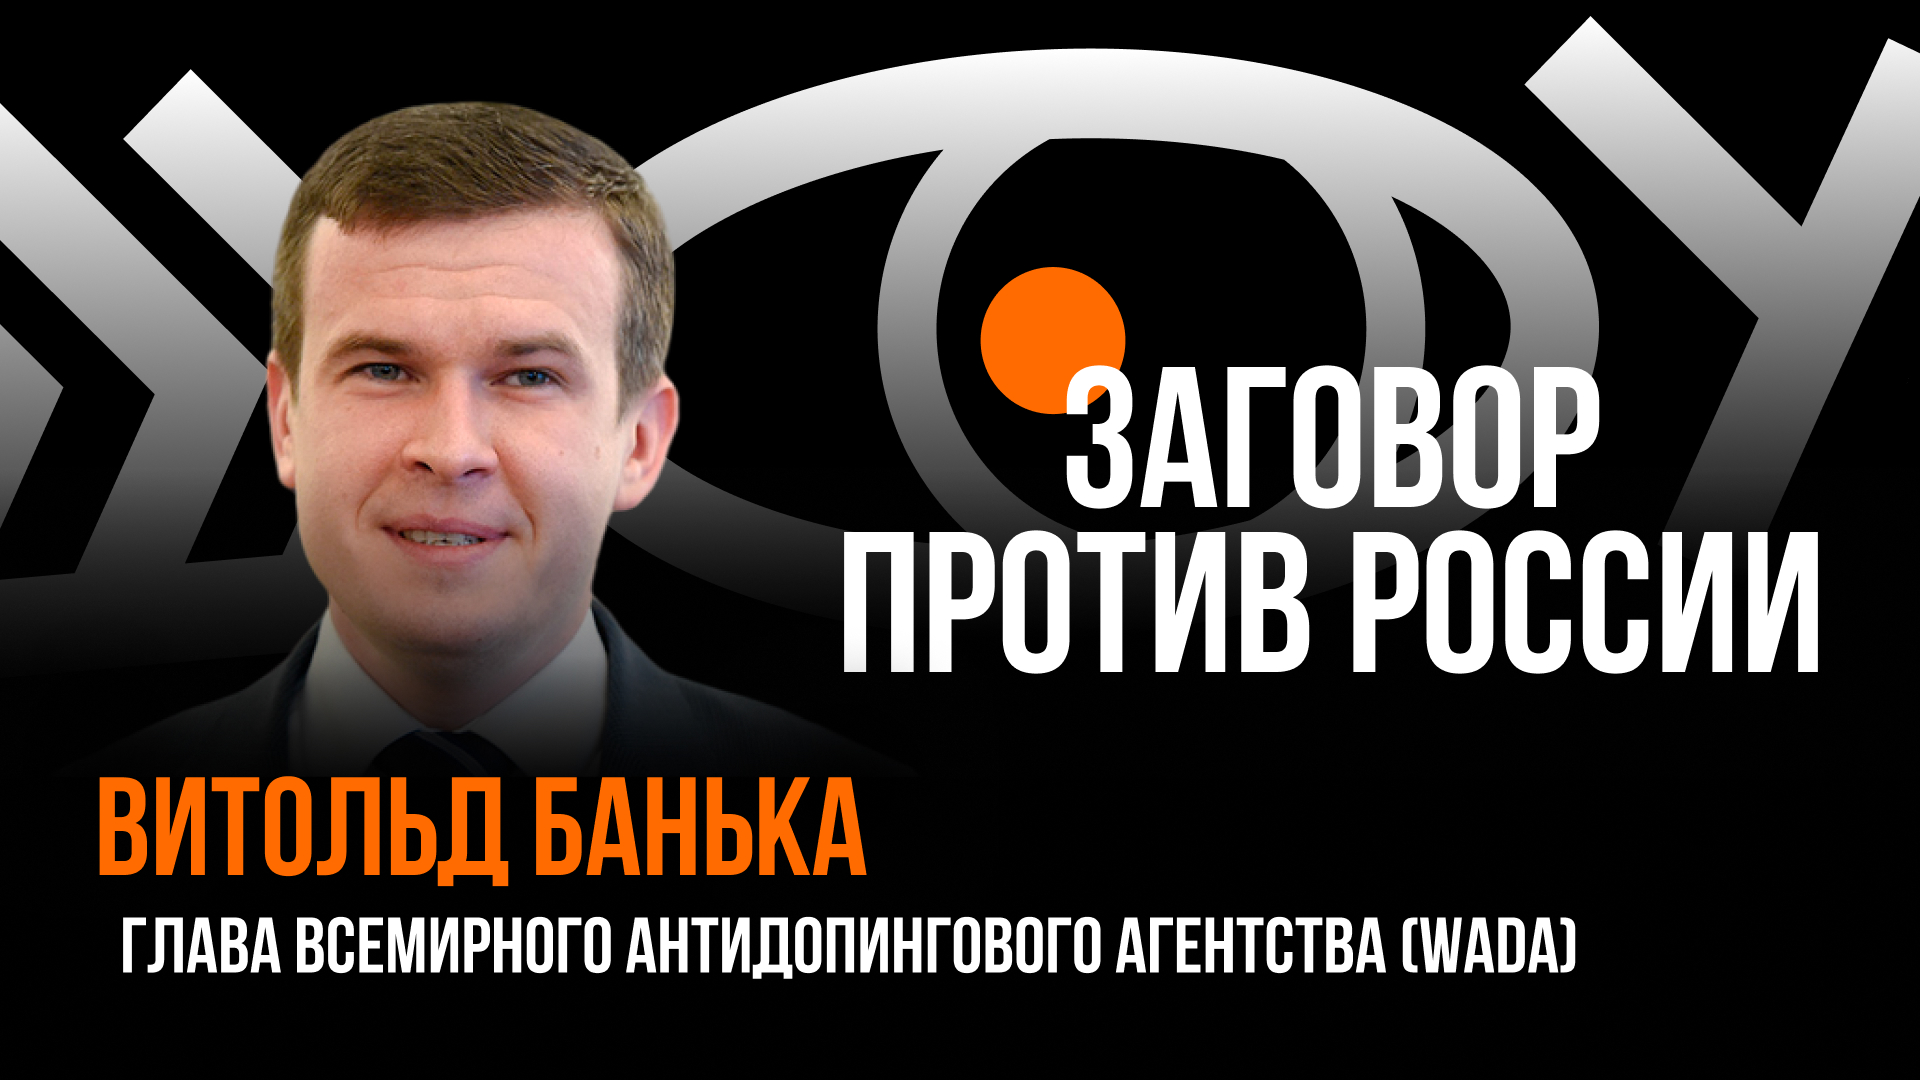 Заговор против России / Пранк с главой WADA Витольдом Банькой